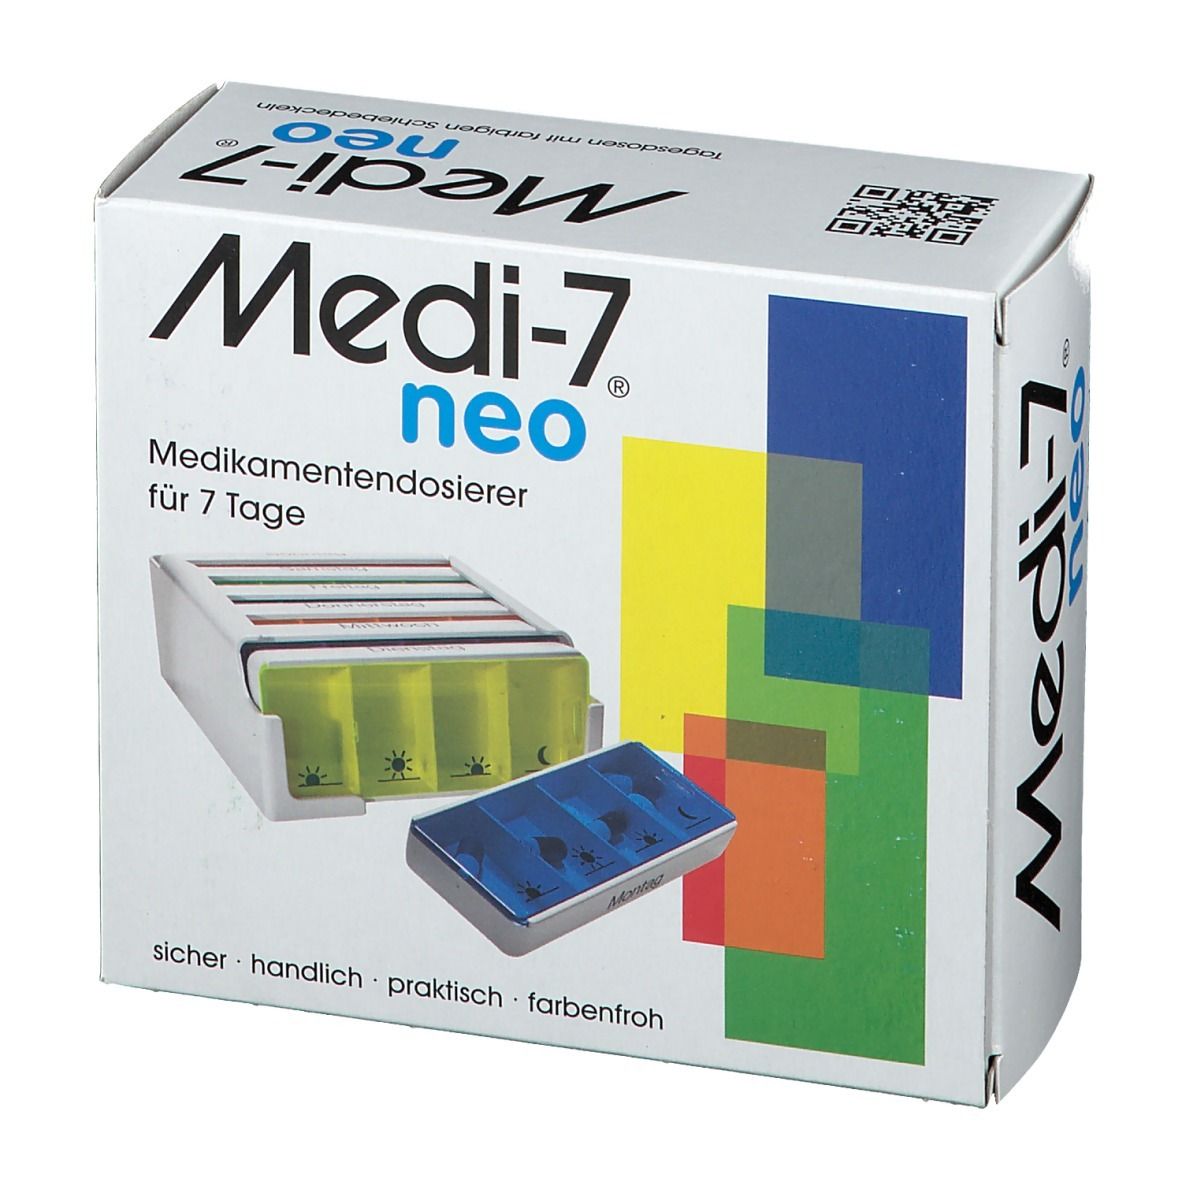 Medi-7 Medikamentendosierer Neo